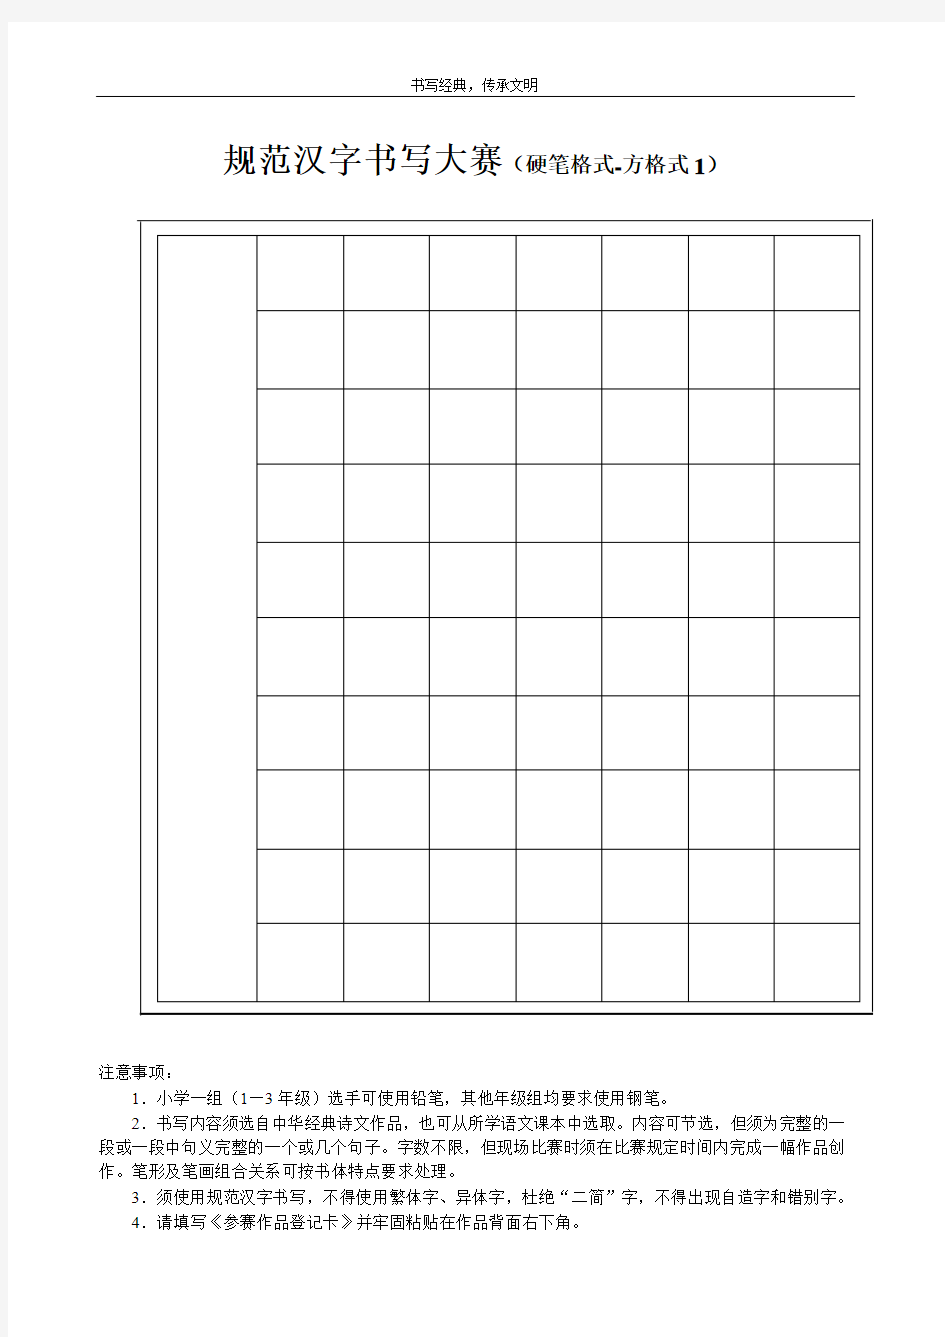 学生规范汉字书写大赛硬笔试卷(7种